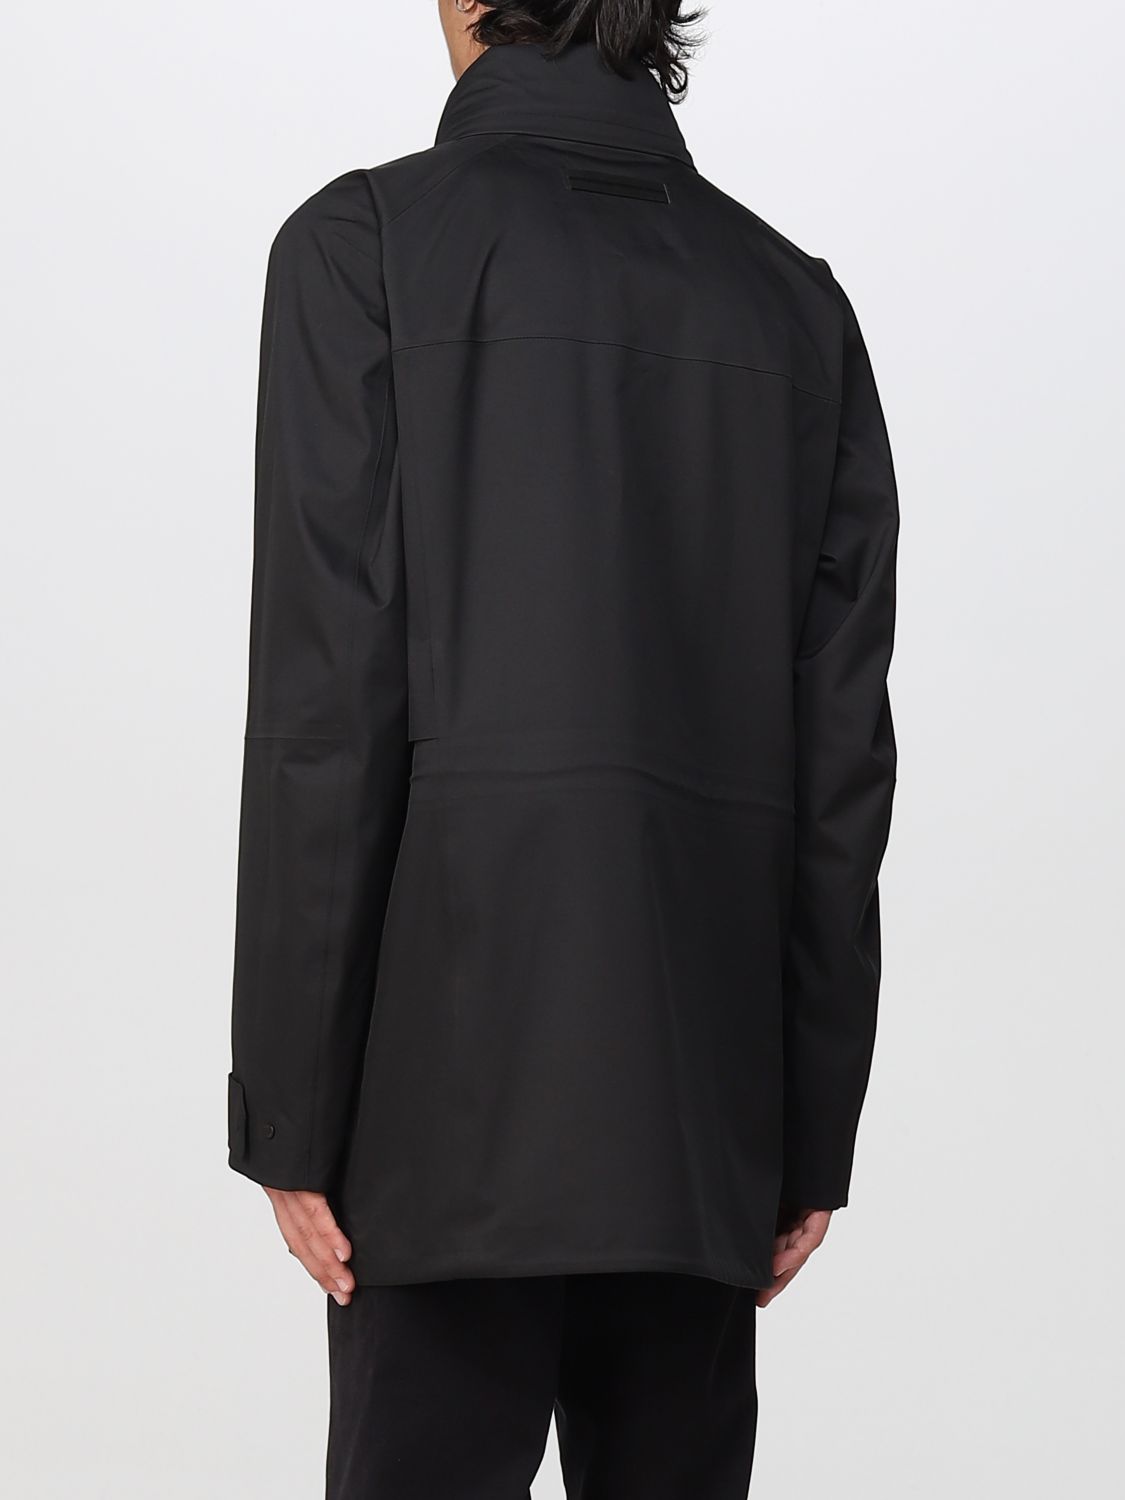 Jacket Zegna: Zegna jacket for men black 2